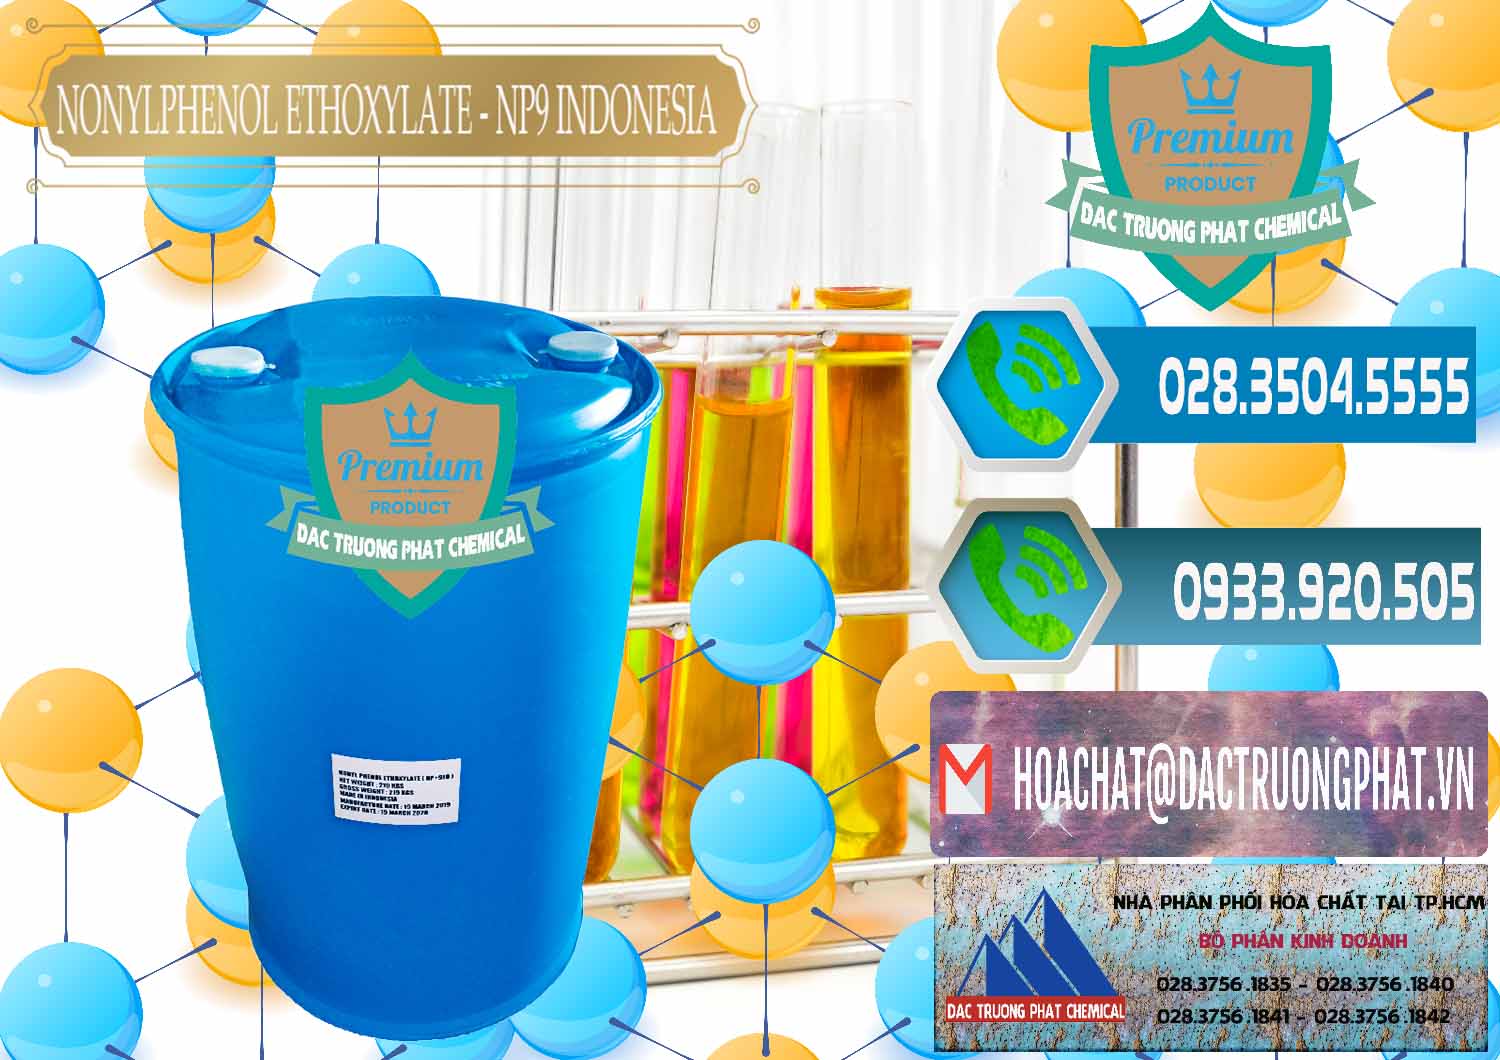 Nơi bán - cung ứng NP9 - Nonyl Phenol Ethoxylate Indonesia - 0317 - Công ty nhập khẩu _ cung cấp hóa chất tại TP.HCM - congtyhoachat.net